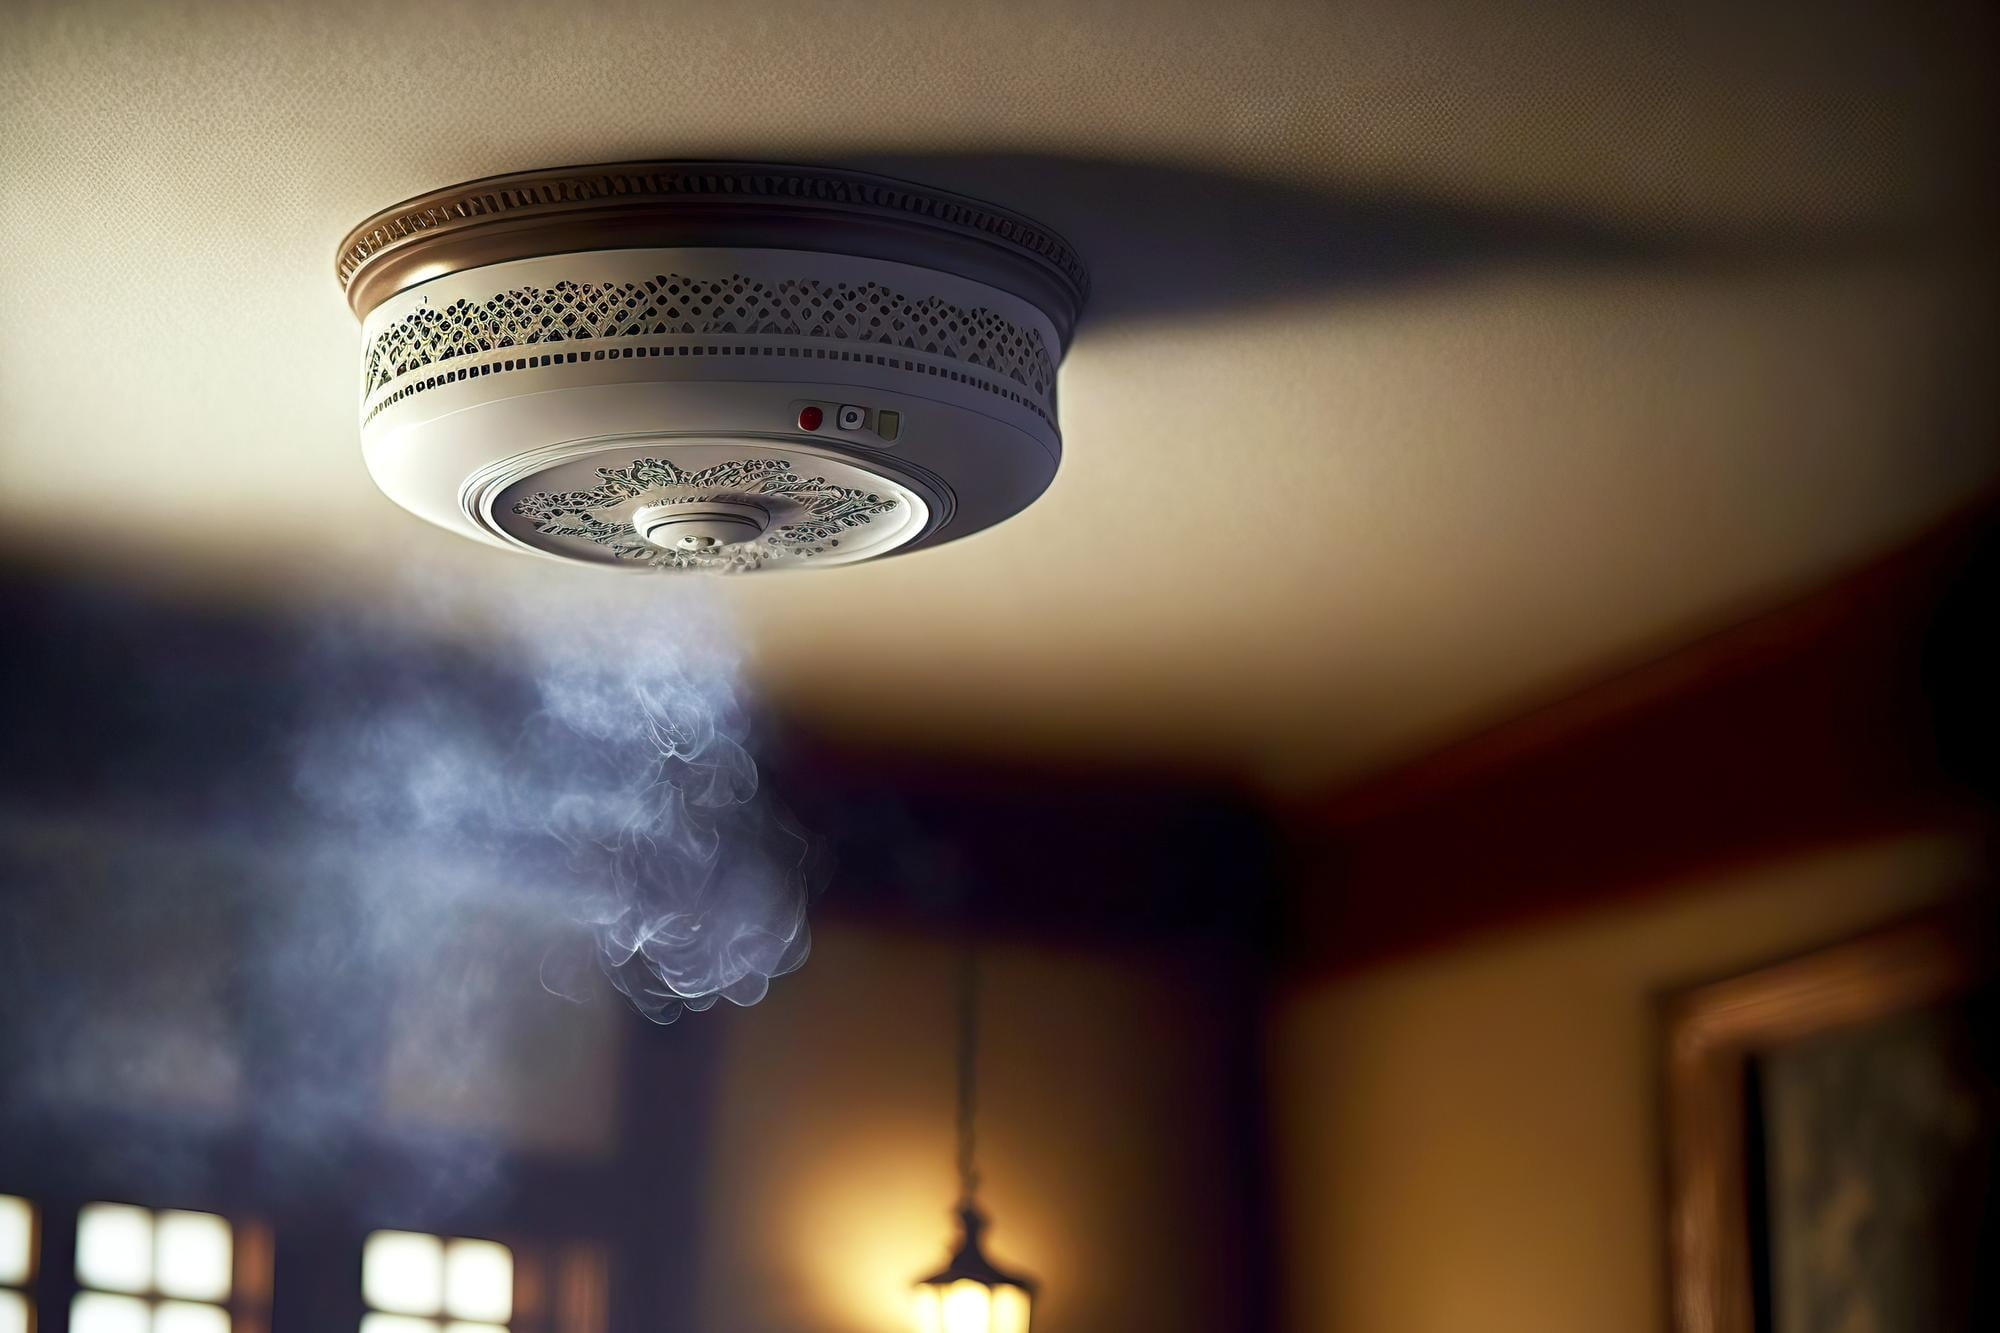 smoke-detectors-and-fire-alarms-sensor-detecting-smoke-on-ceiling-of-home